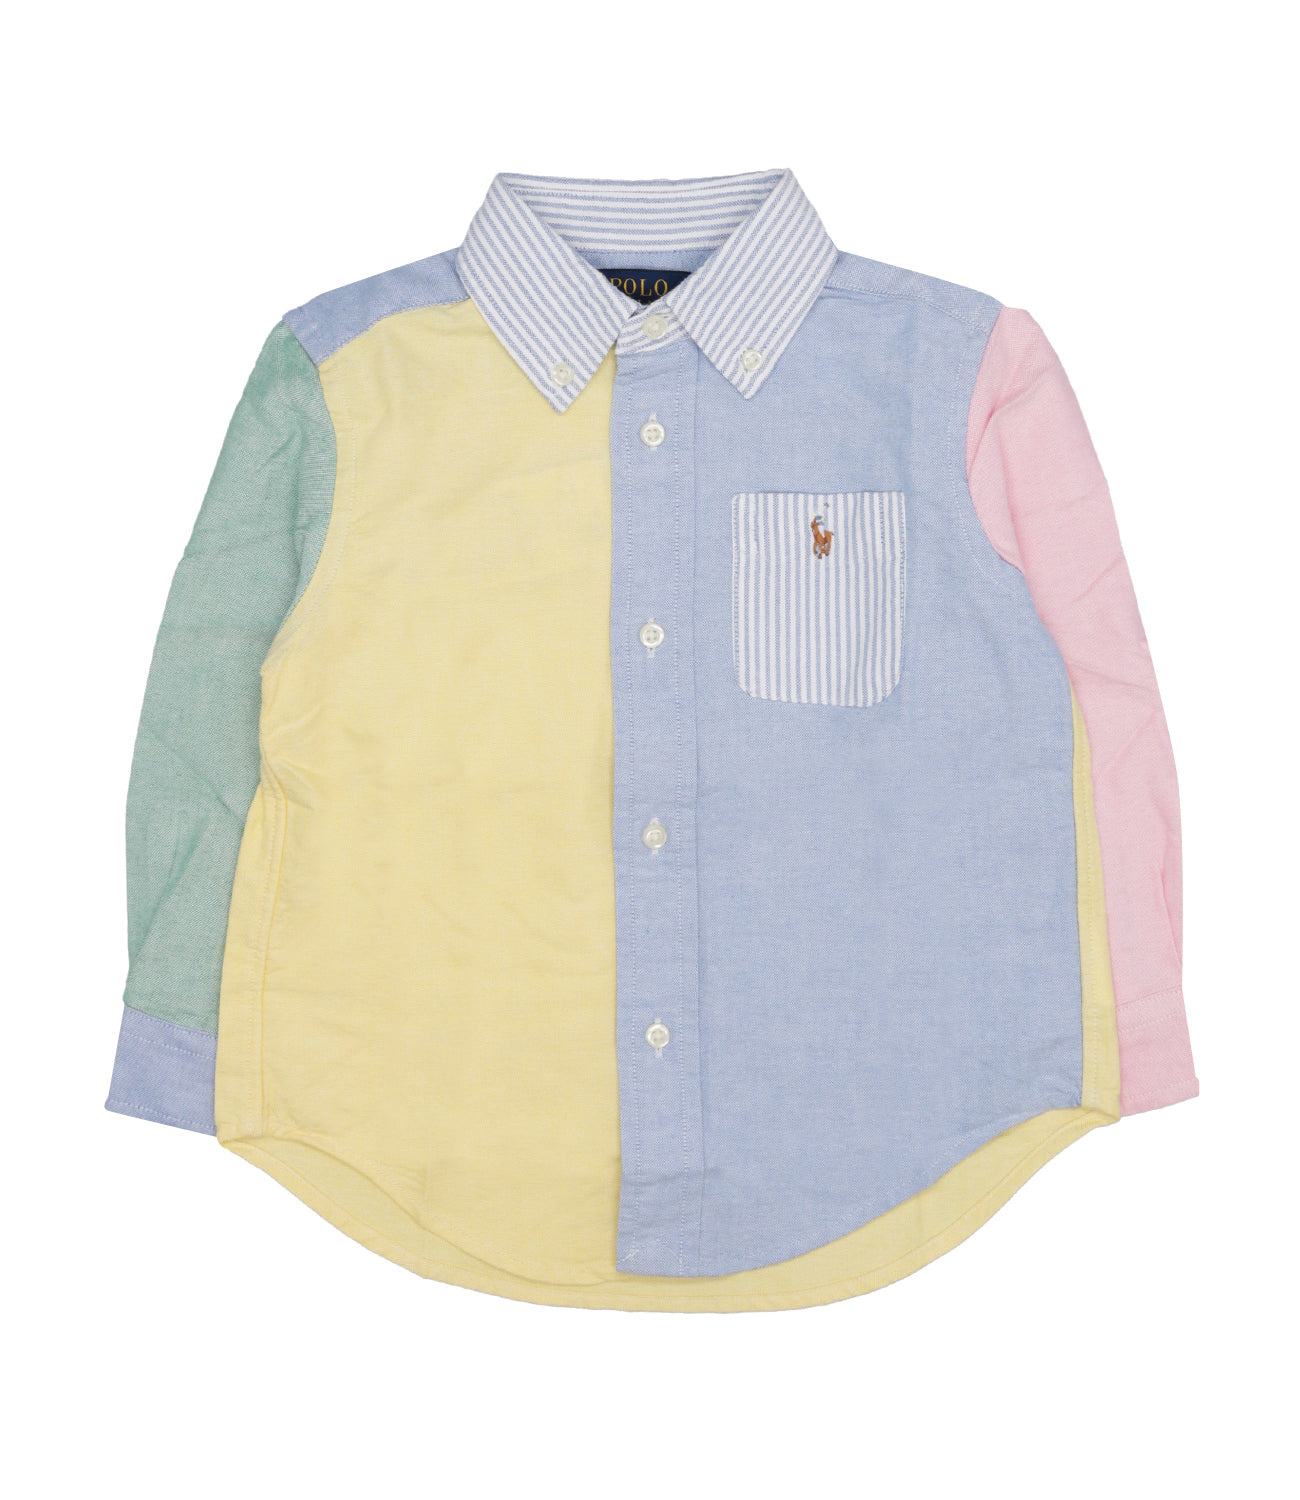 Ralph Lauren Childrenswear | Yellow and Light Blue Shirt